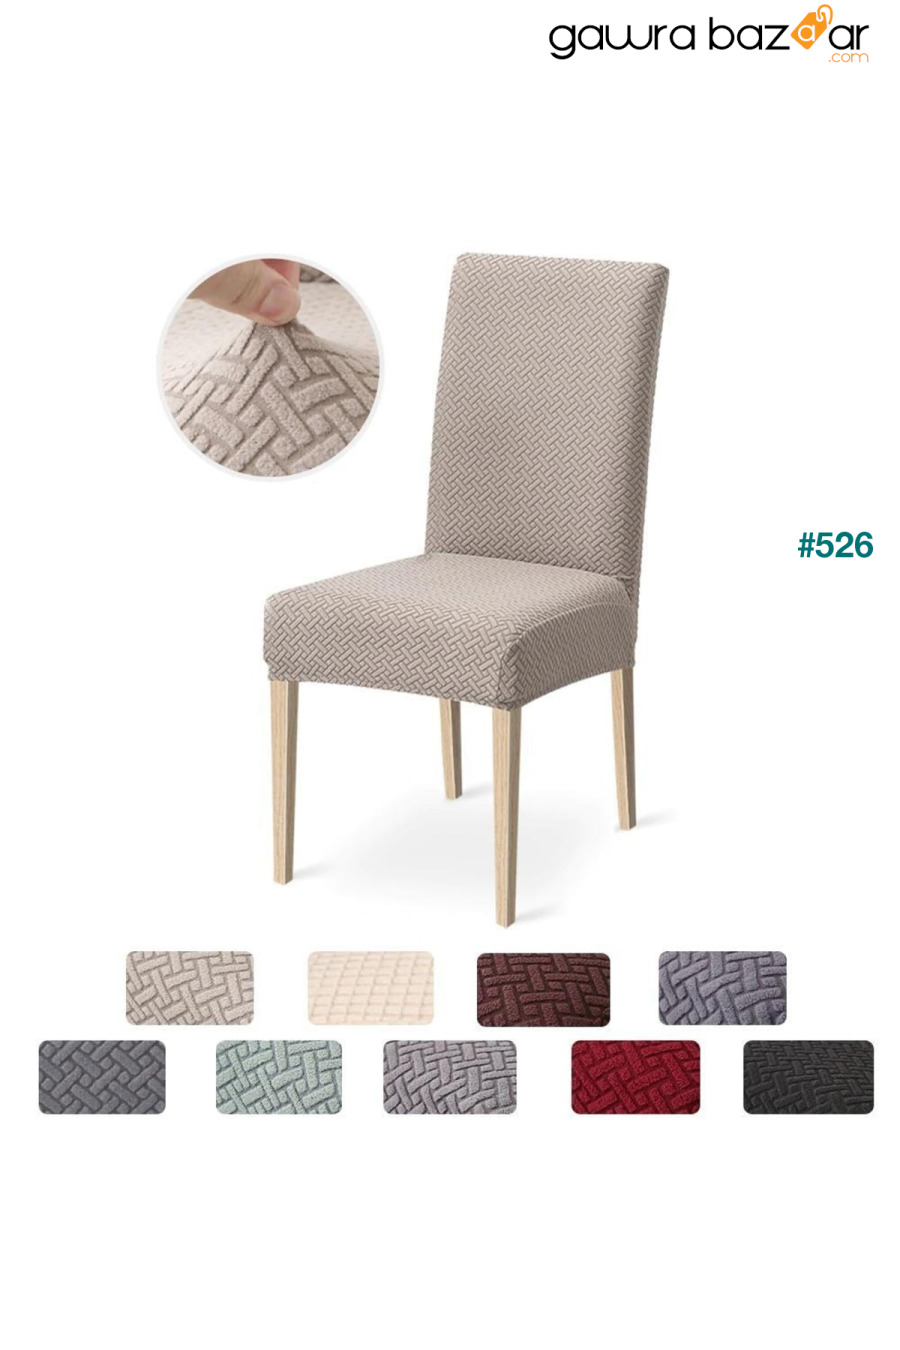 غطاء كرسي عالي الجودة ، ليكرا ، قابل للغسل ، قطعة واحدة لون منك [# 4] ÖZMAKAN 0